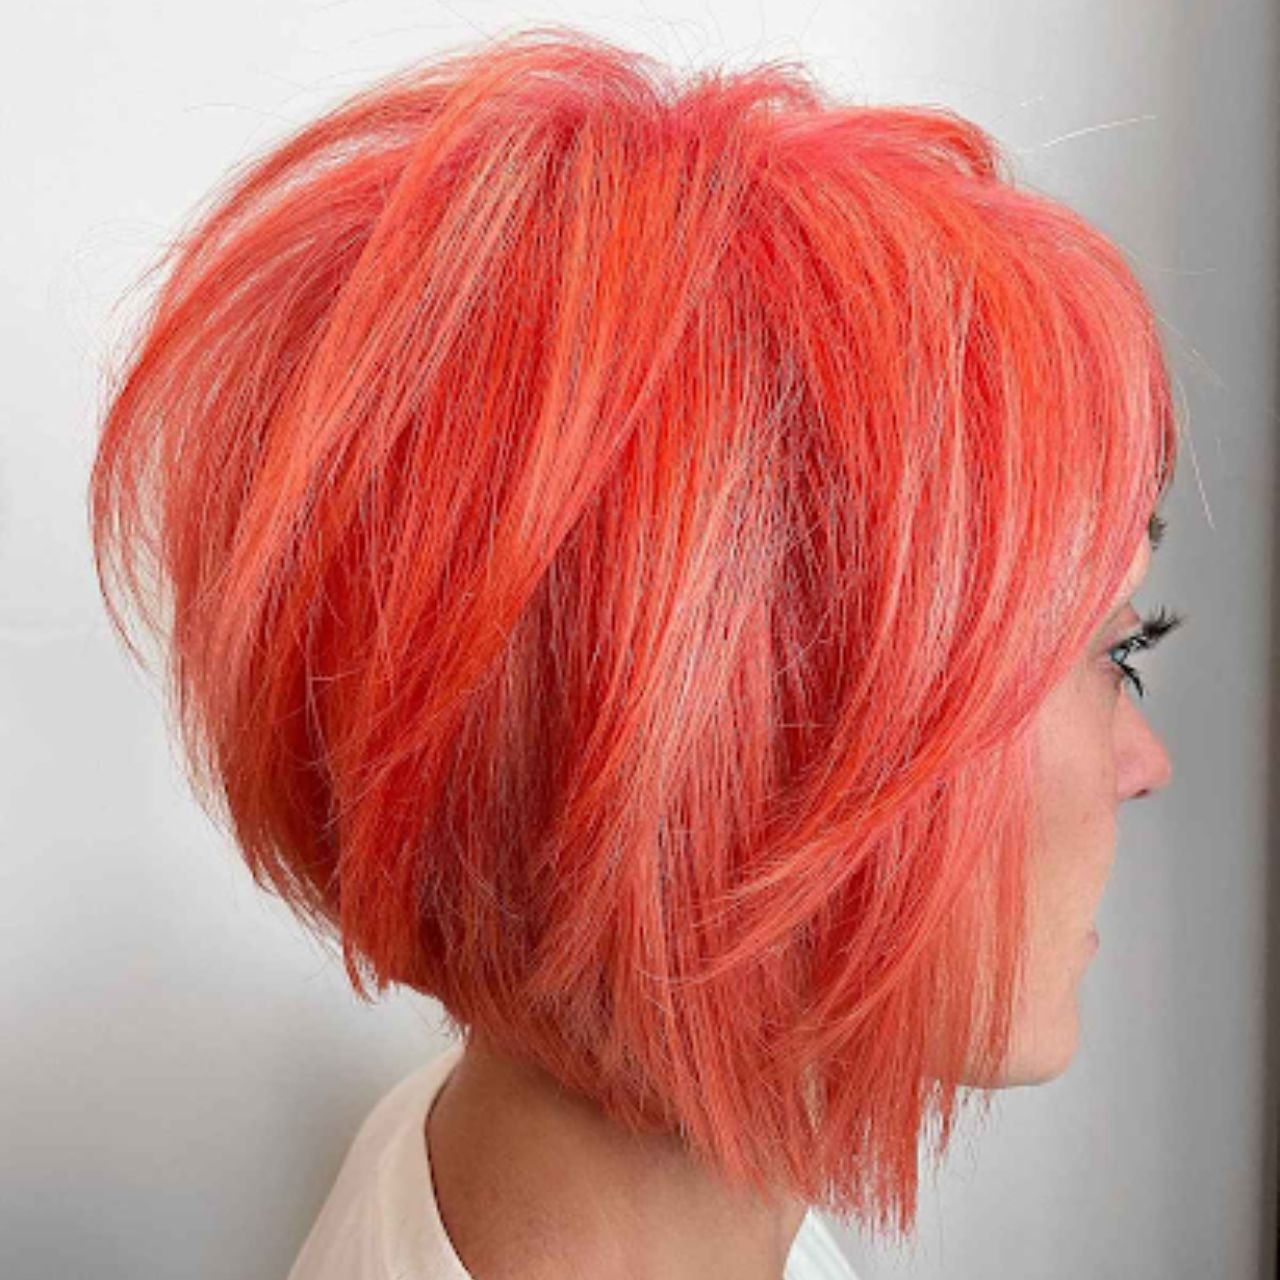 Peach bob hairstyle